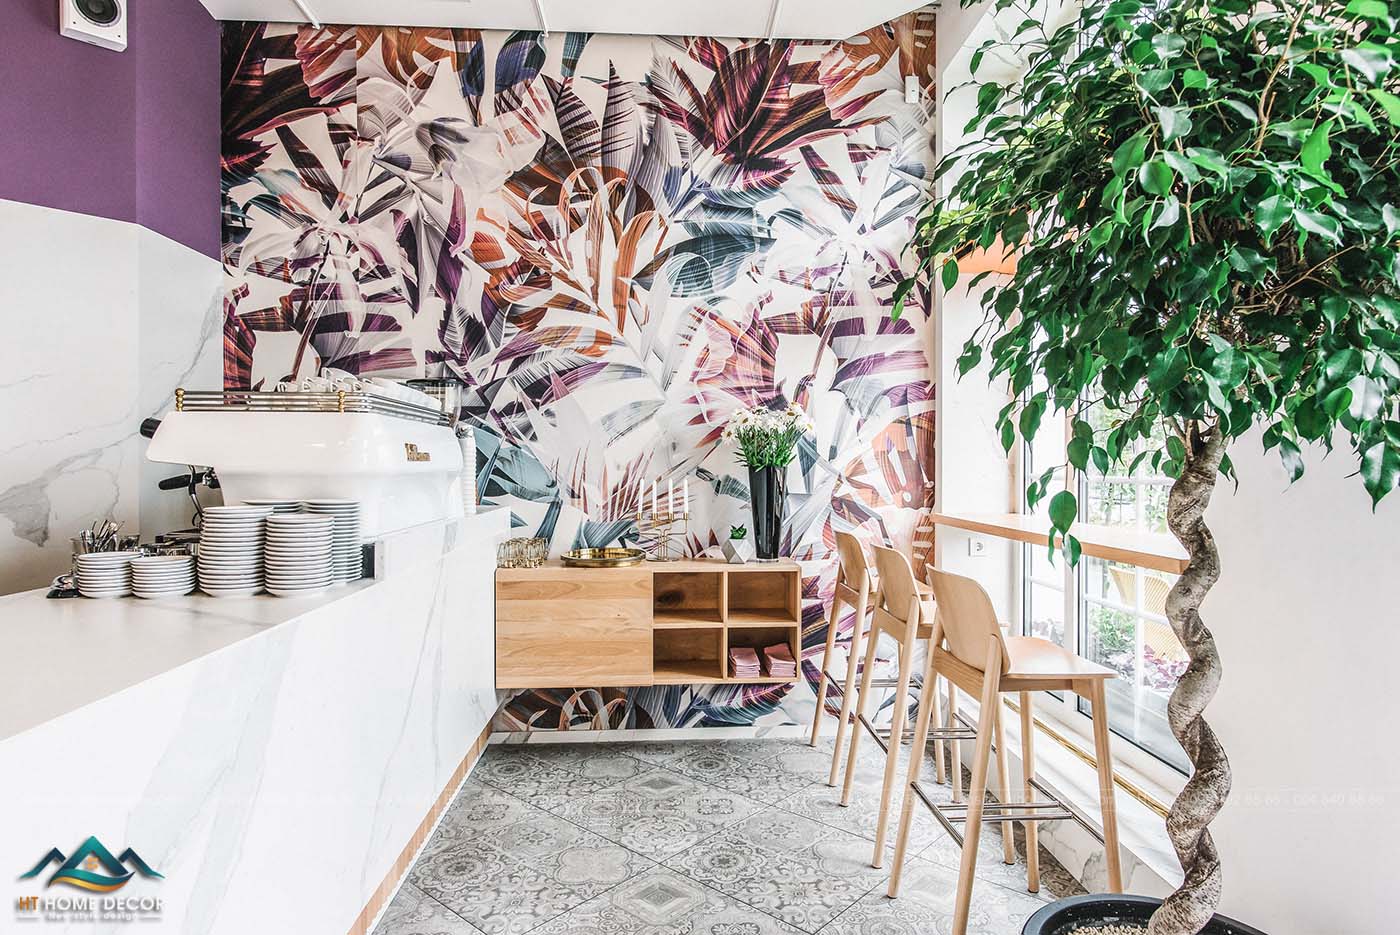 Những bức tường tràn đầy hoa lá là đặc trưng của phong cách tropical. Không khí mùa hè sôi nổi và vui vẻ luôn hiện hữu ở không gian quán cà phê của bạn.